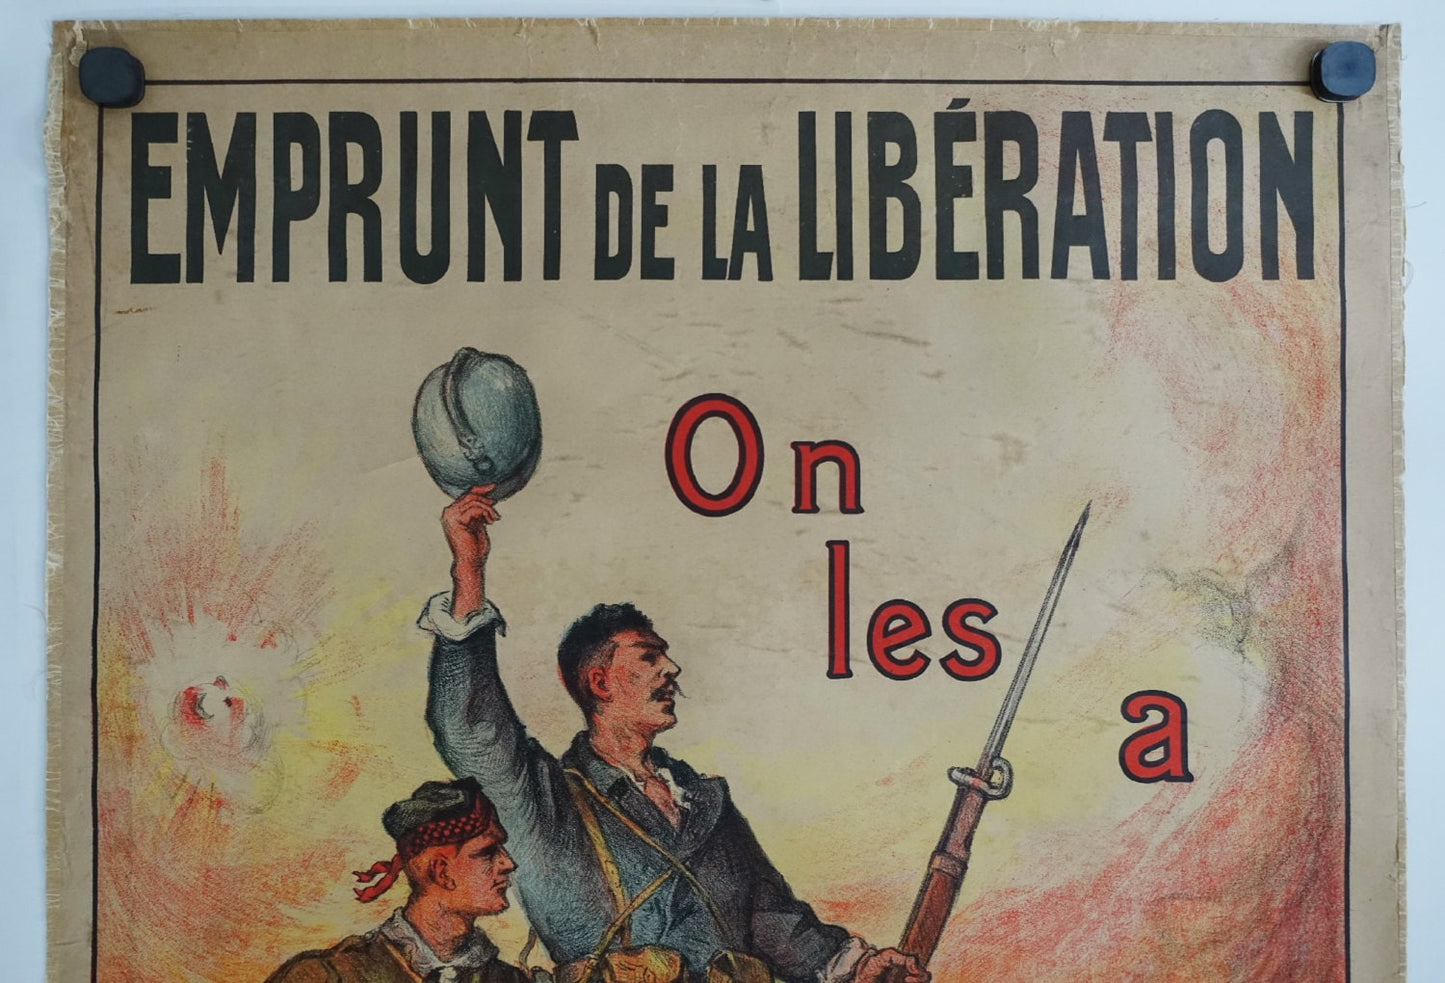 1918 French WWI Propaganda Poster for War Shares "Emprunt de la Libération" - Original Vintage Poster